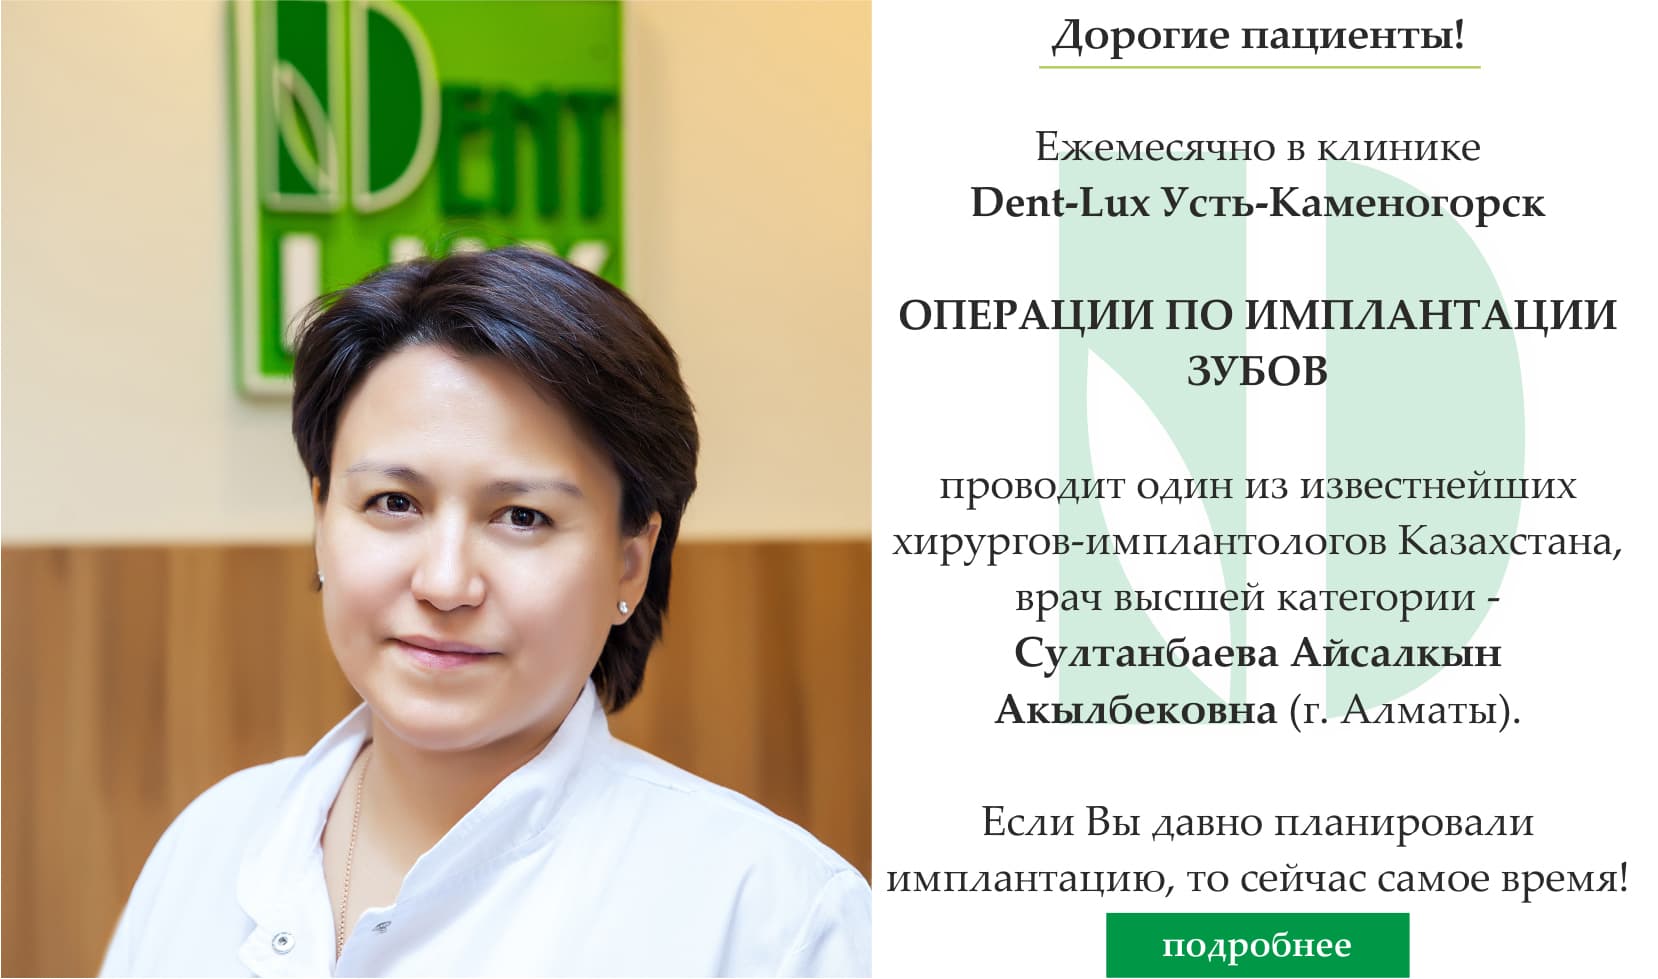 Программы укрепления зубов кальцием и фтором в Казахстане, фото 2